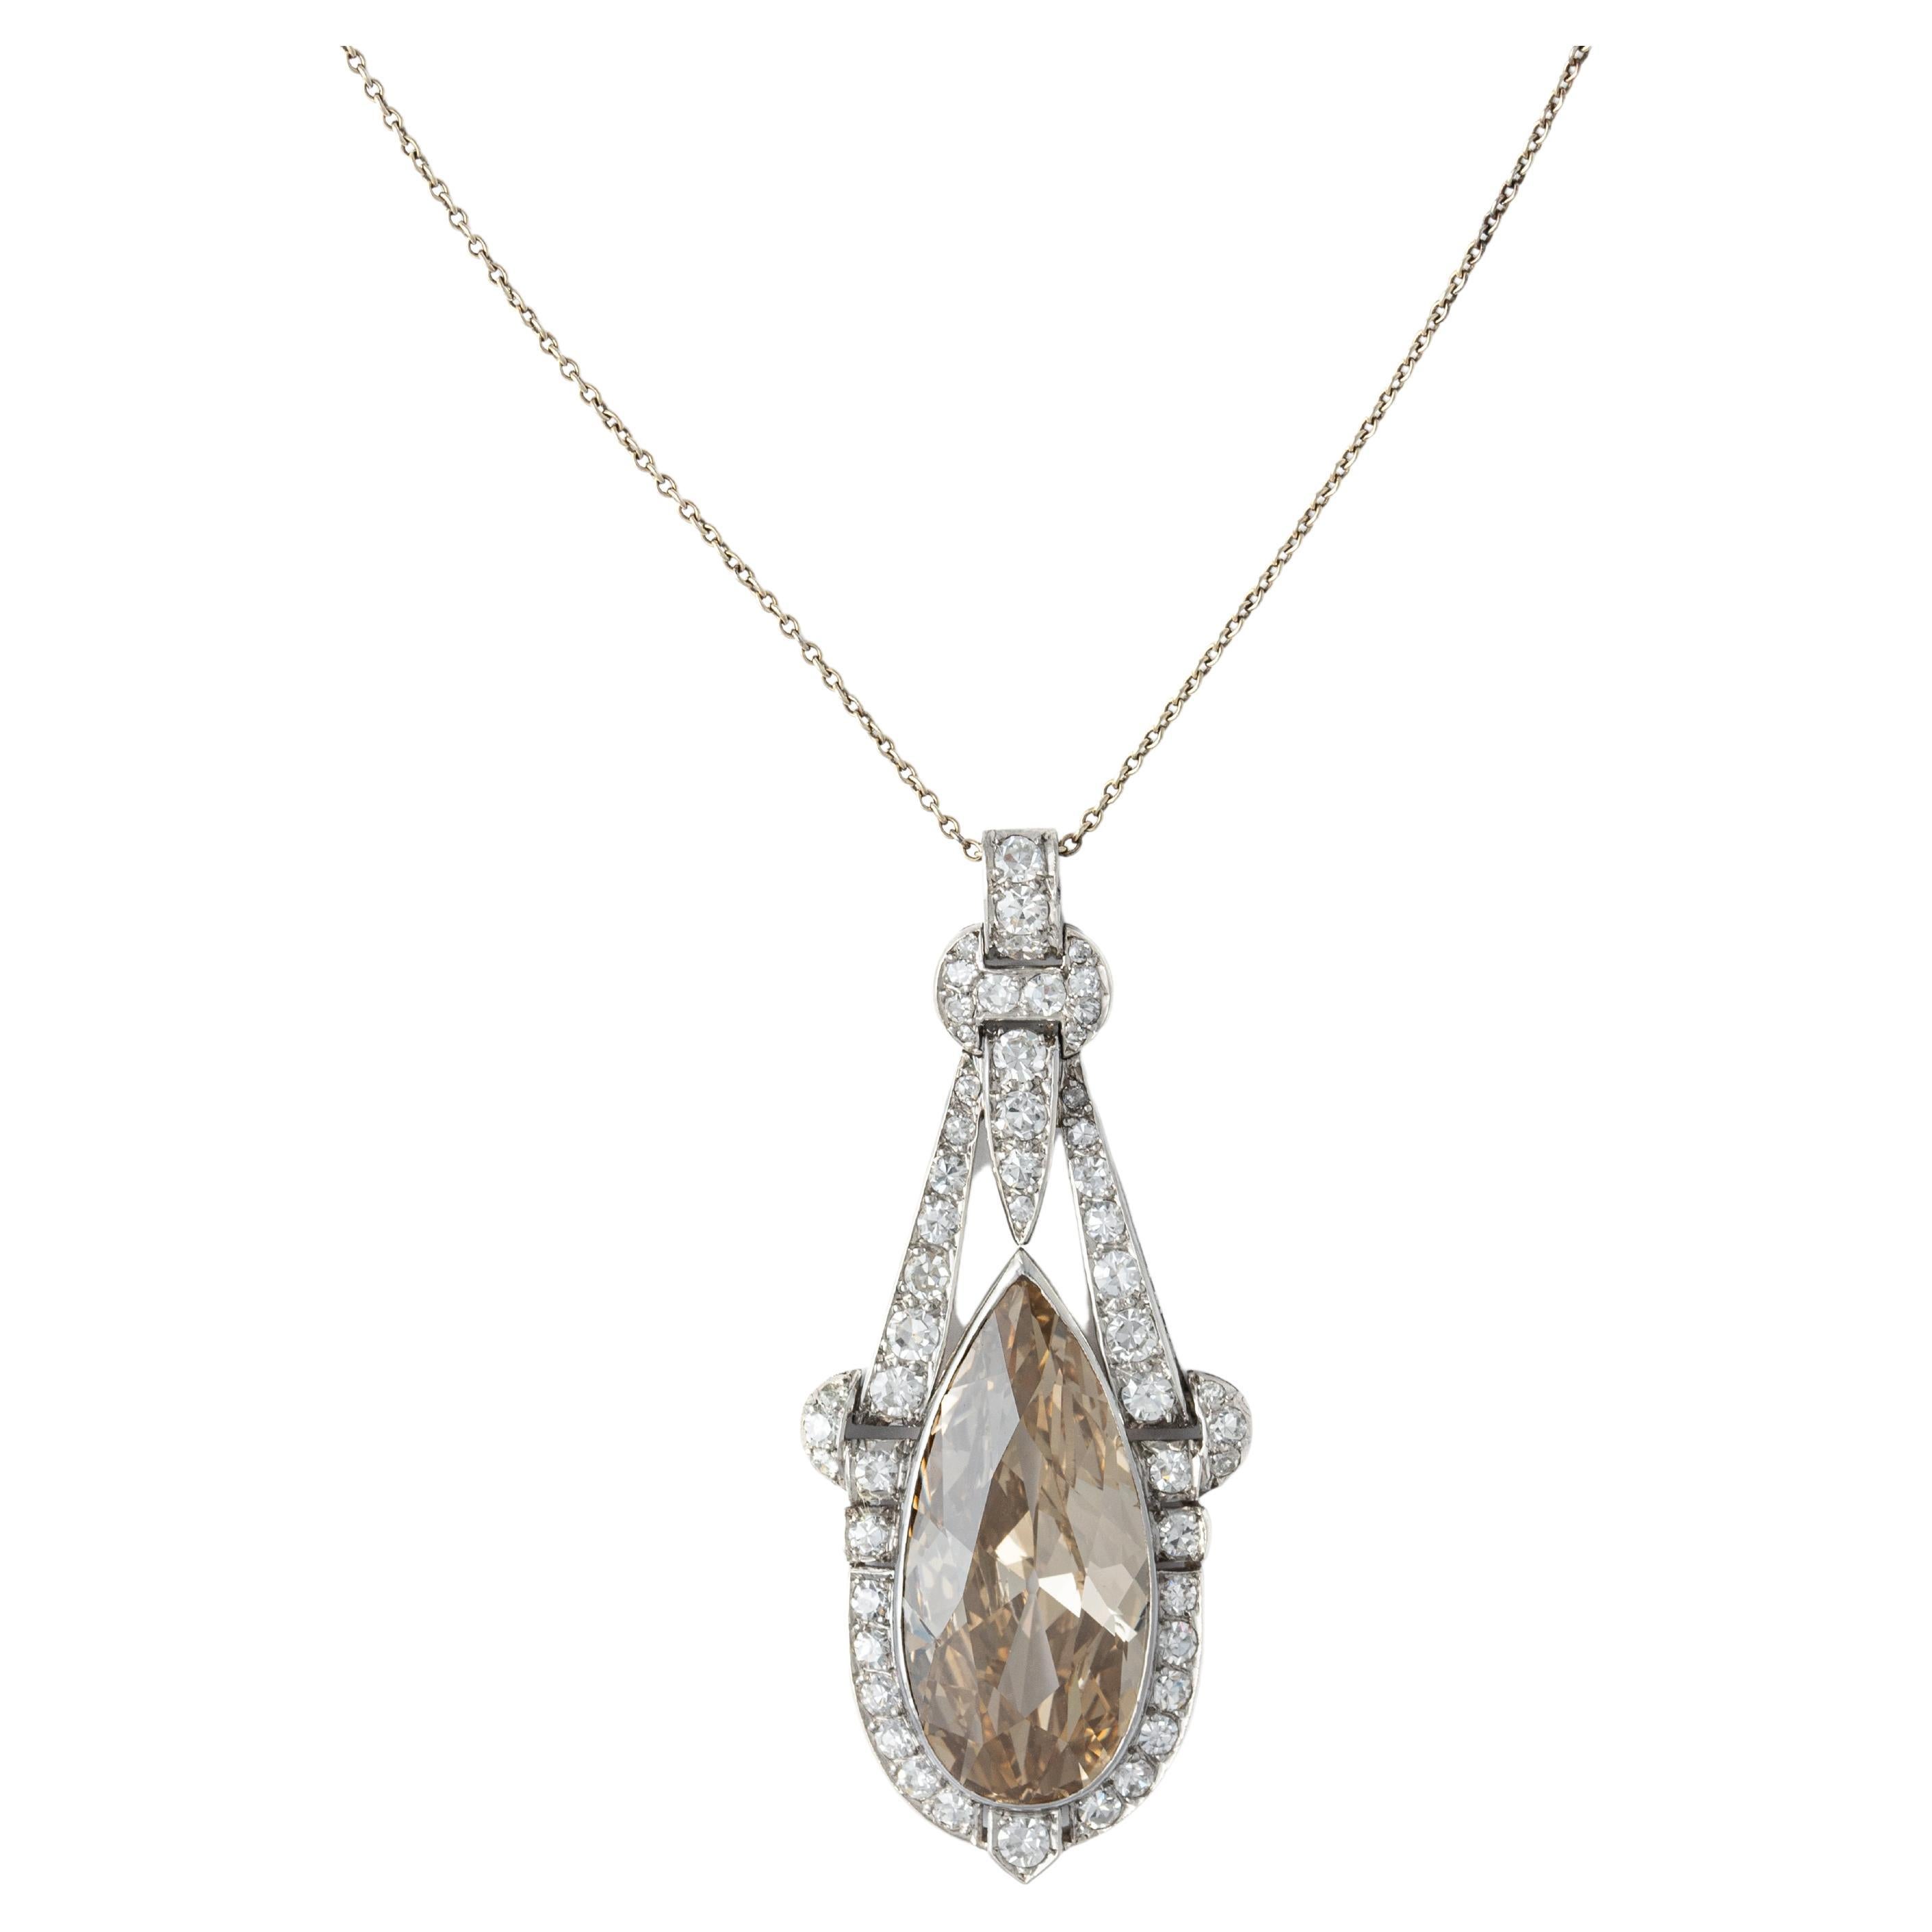 Art Deco about 10 carat Diamond Pendant Chain Necklace